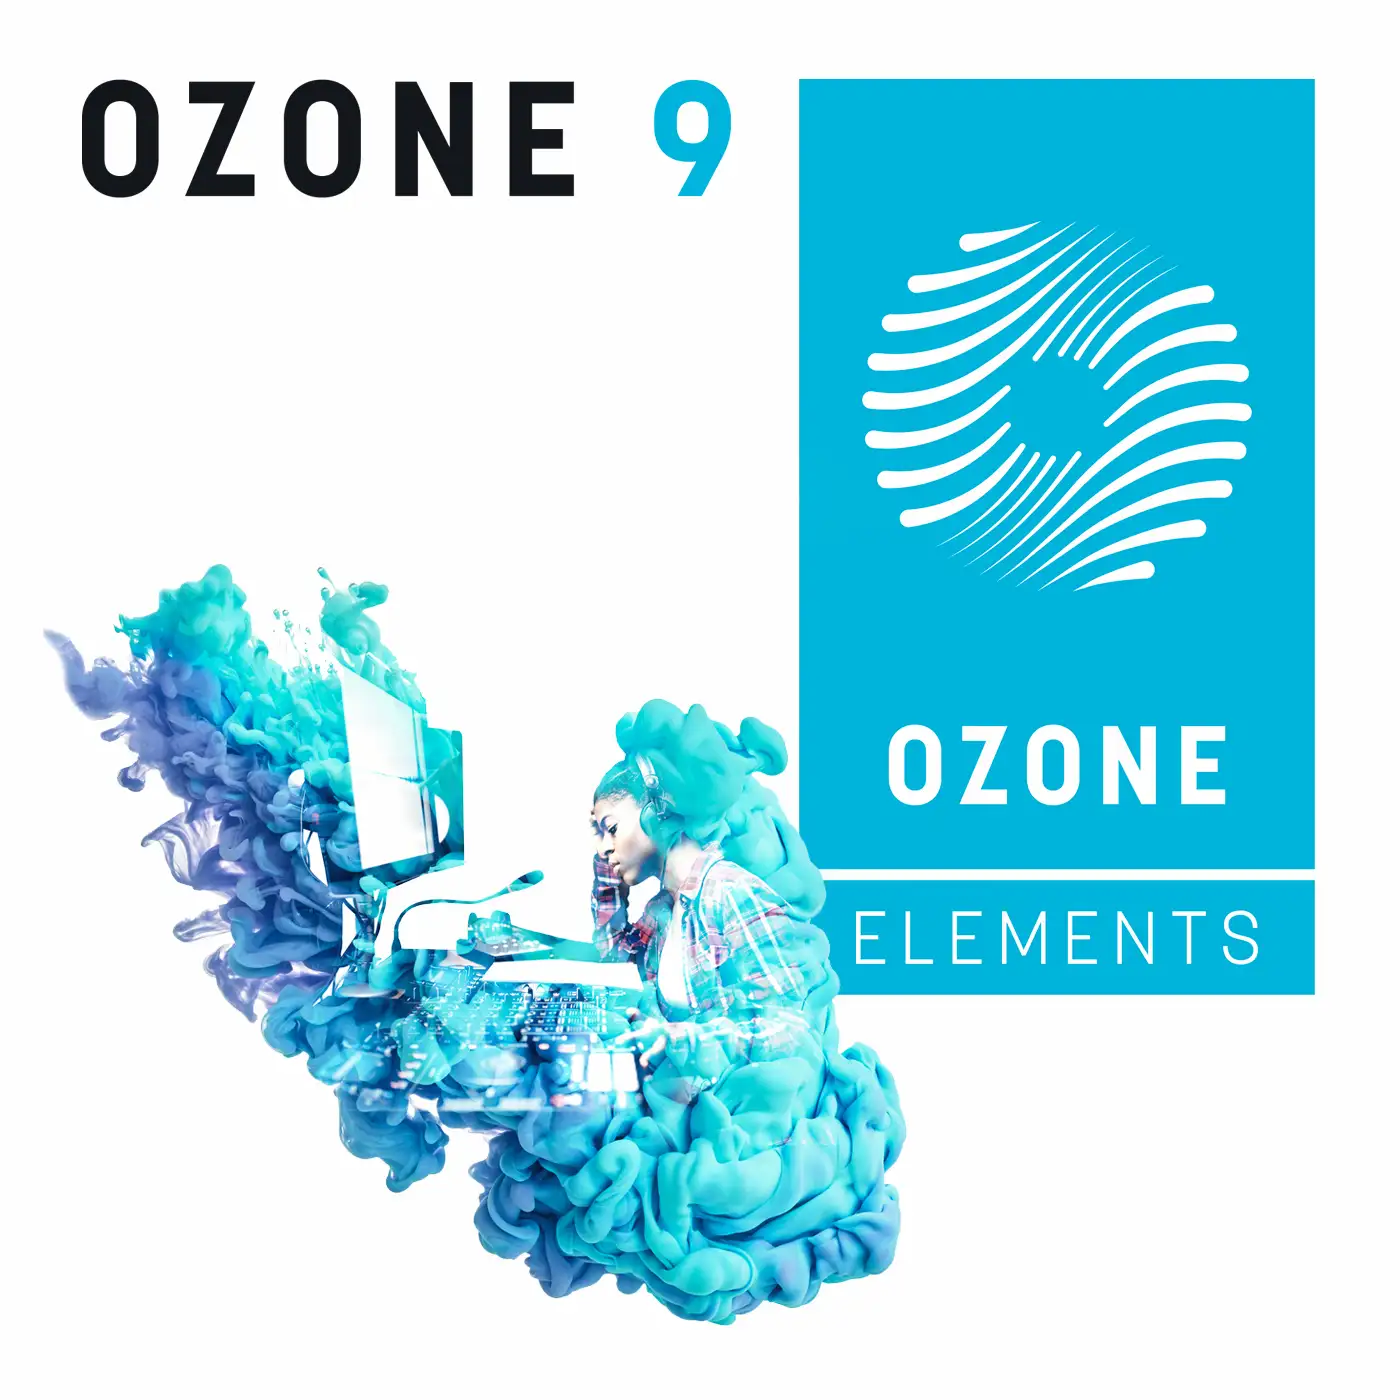 IZotope | Ozon 9 elemanları